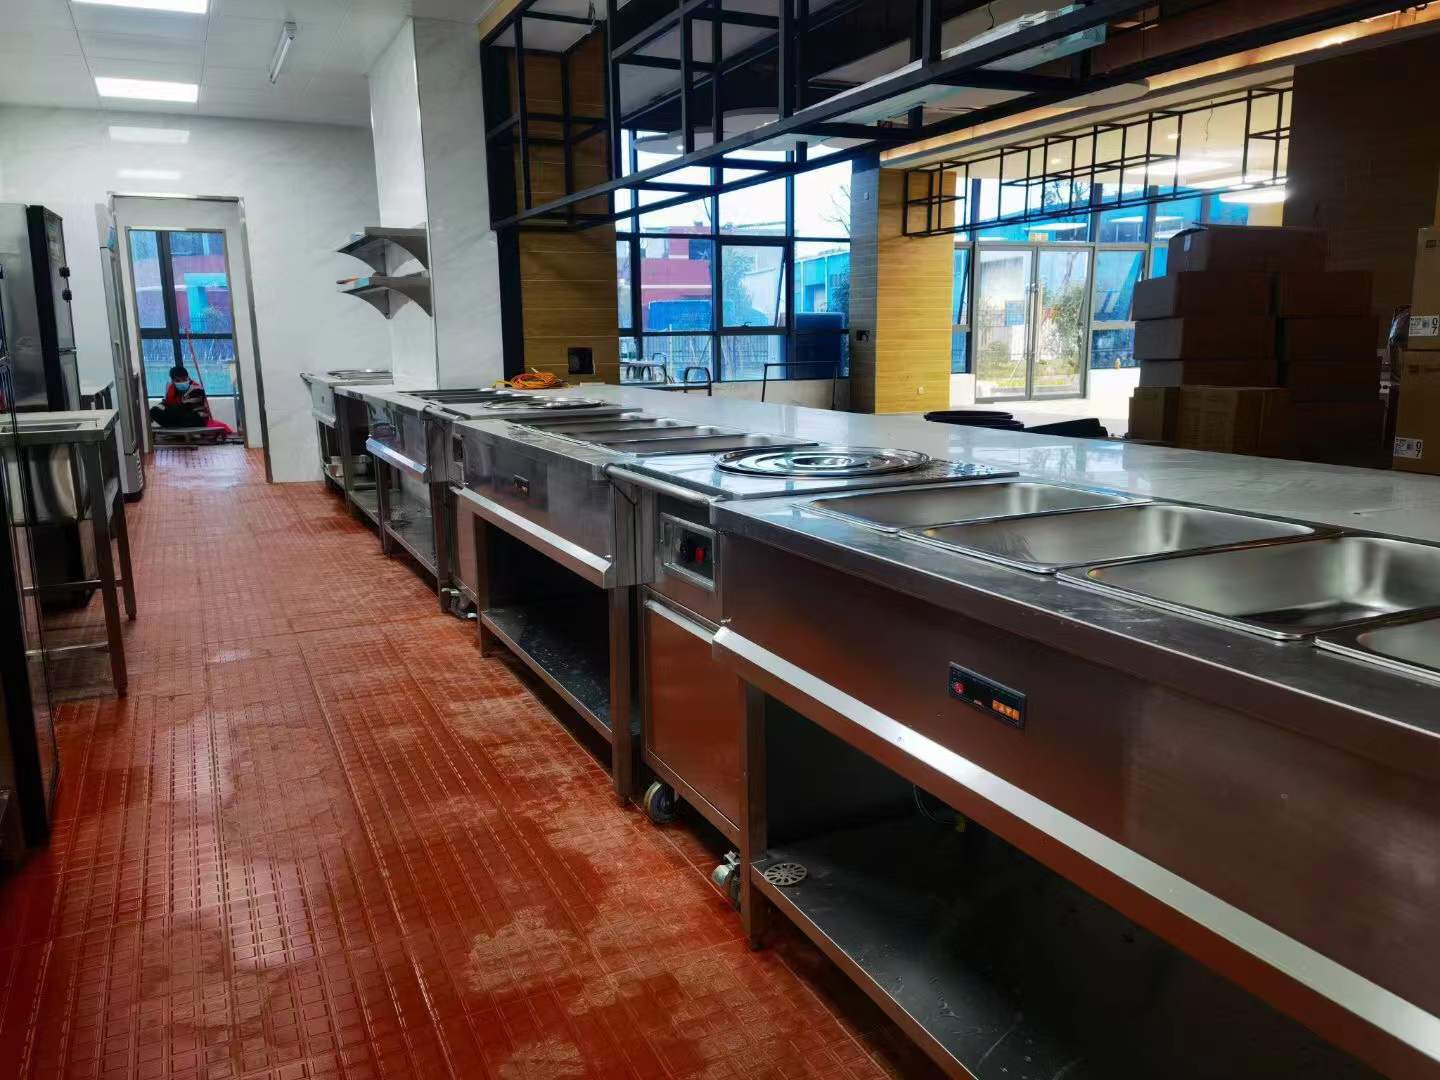 280人食堂厨房工程设计怎么配置灶和厨房设备